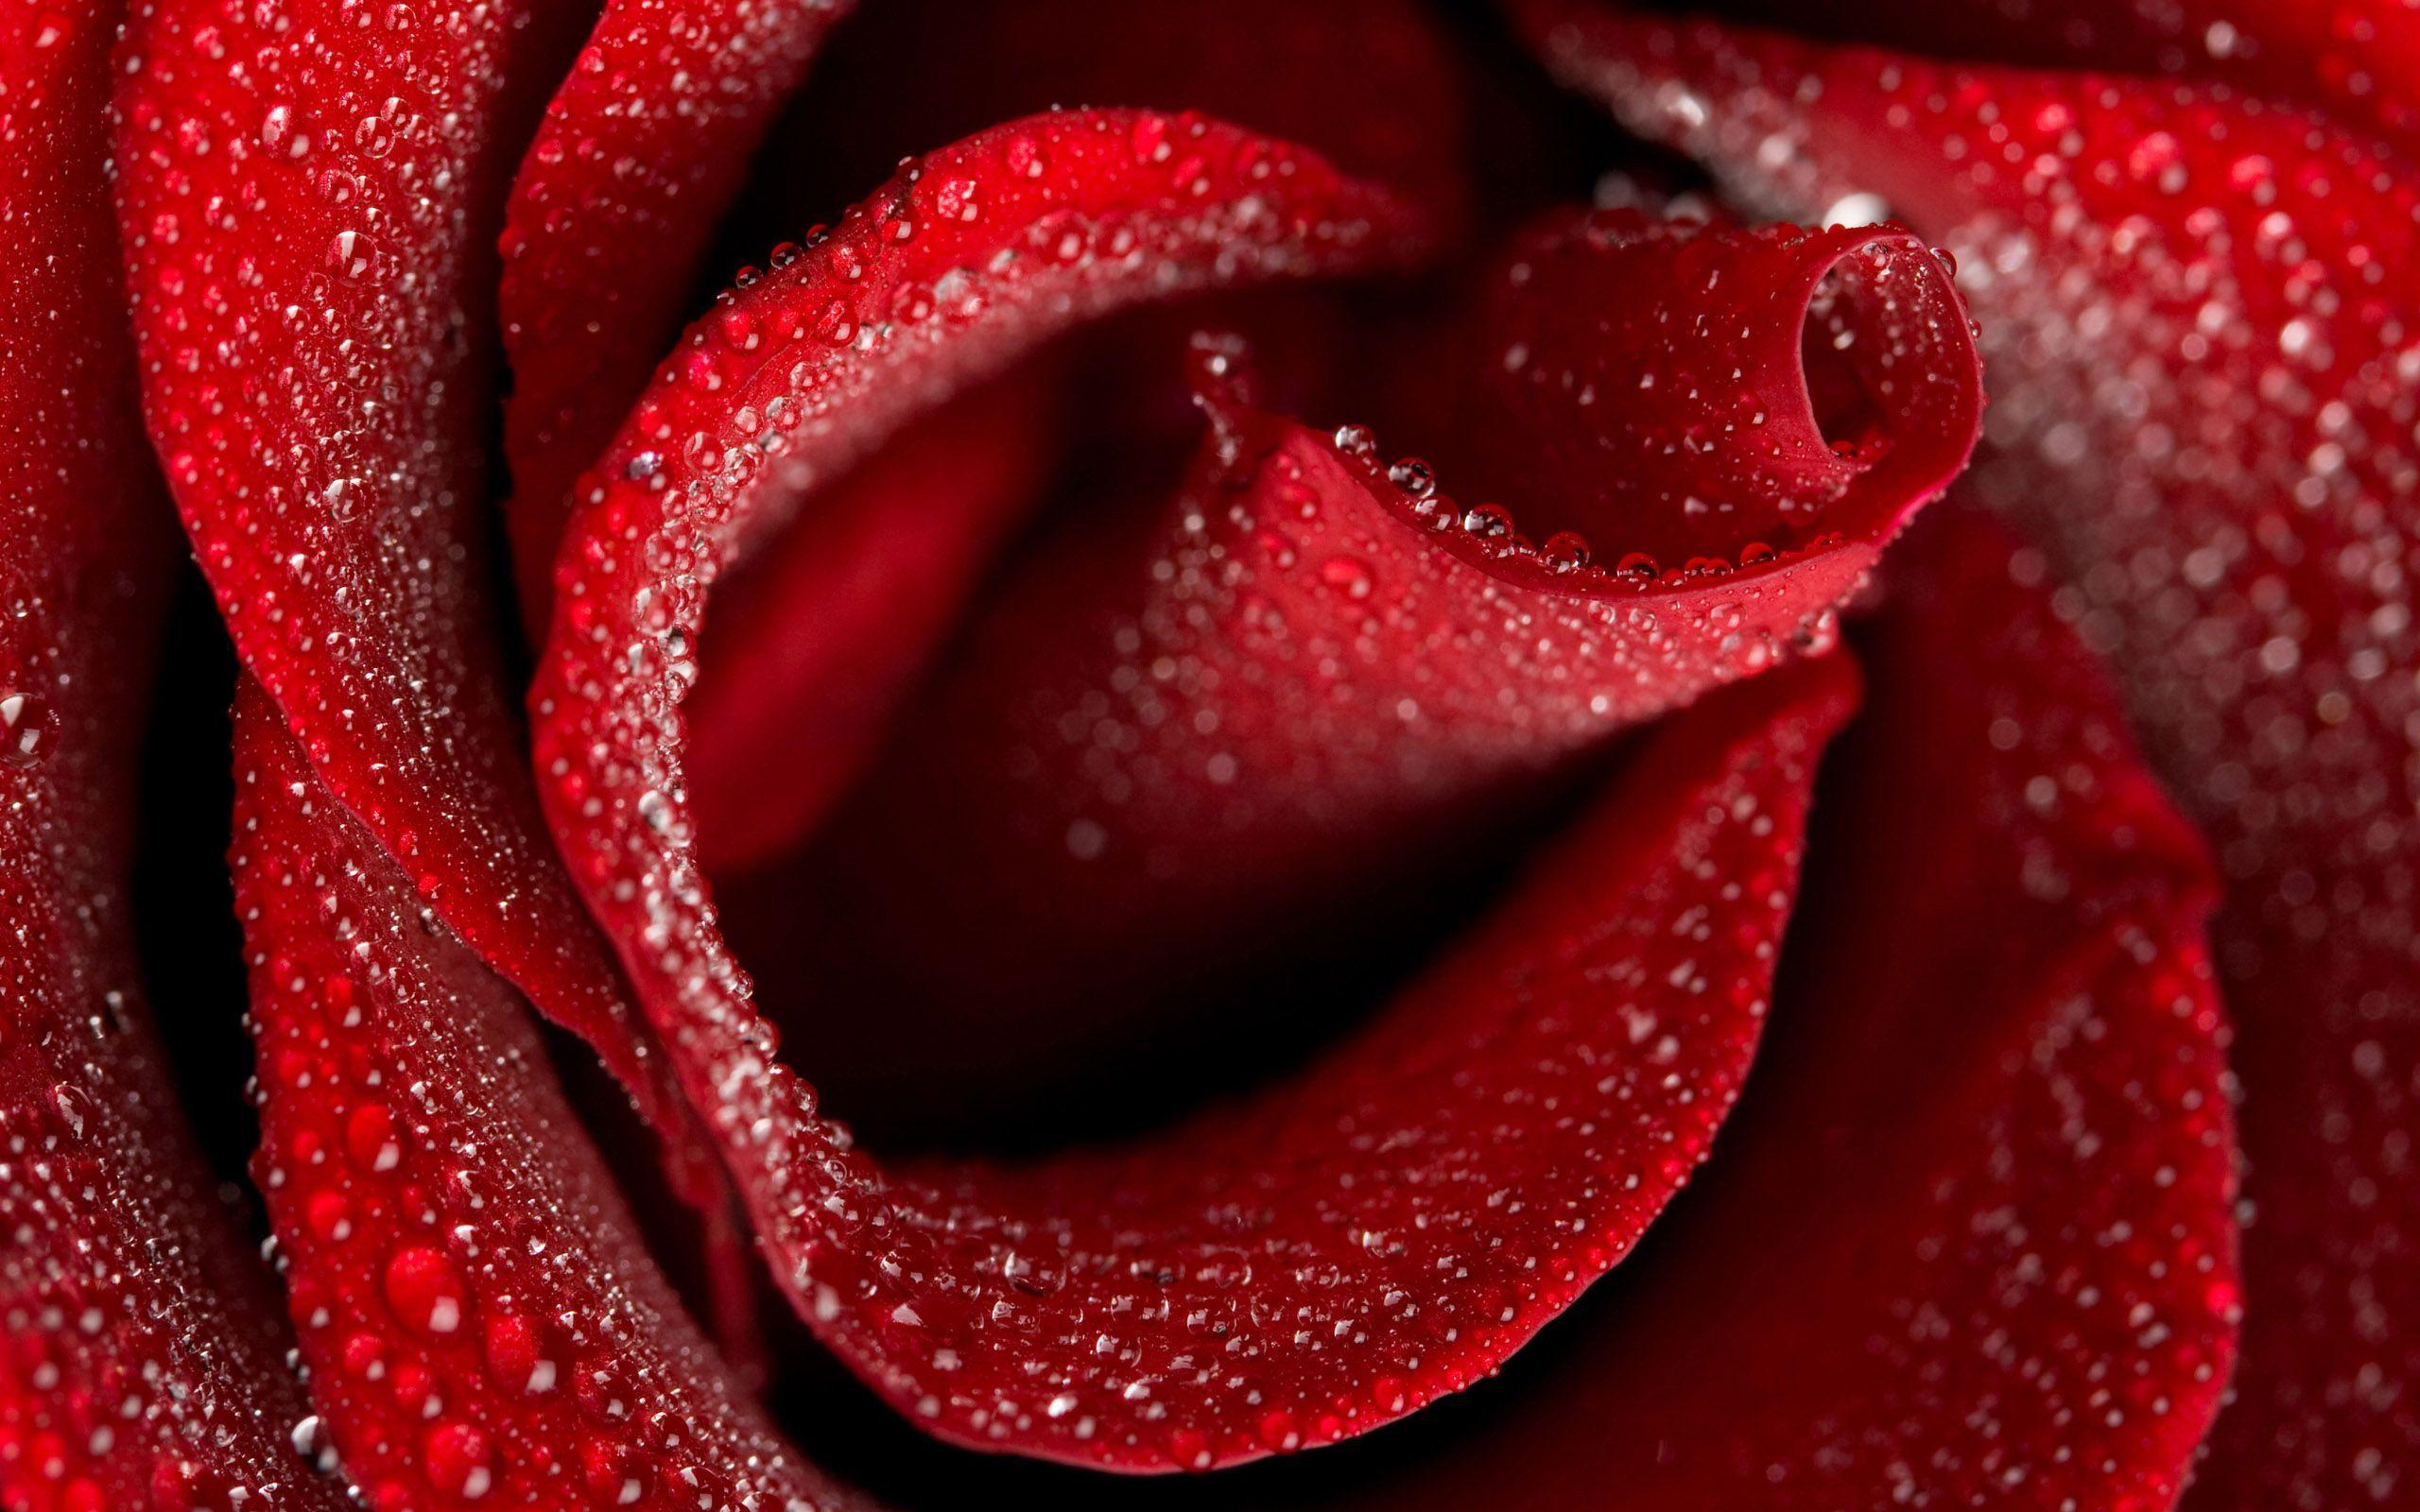 Roses HD Wallpaper